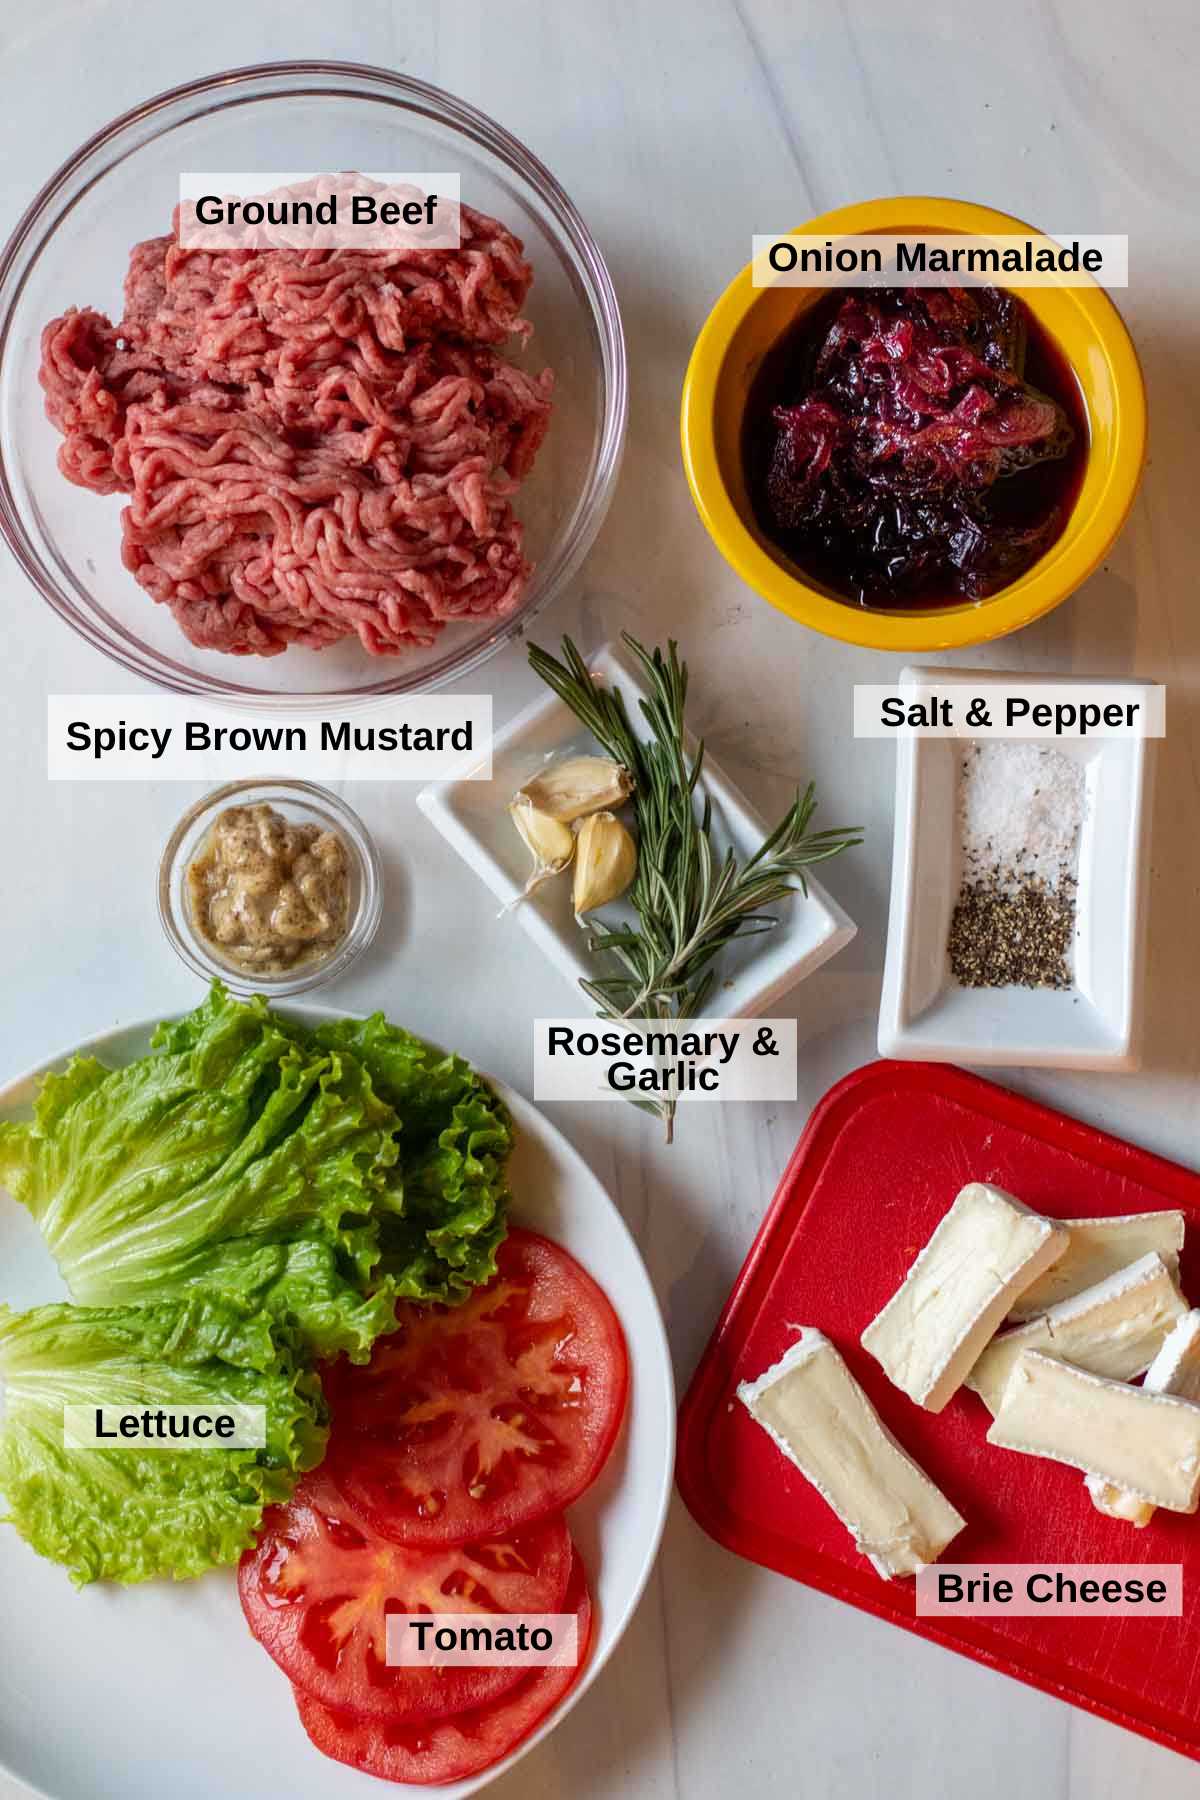 Ingredients to make brie burgers.